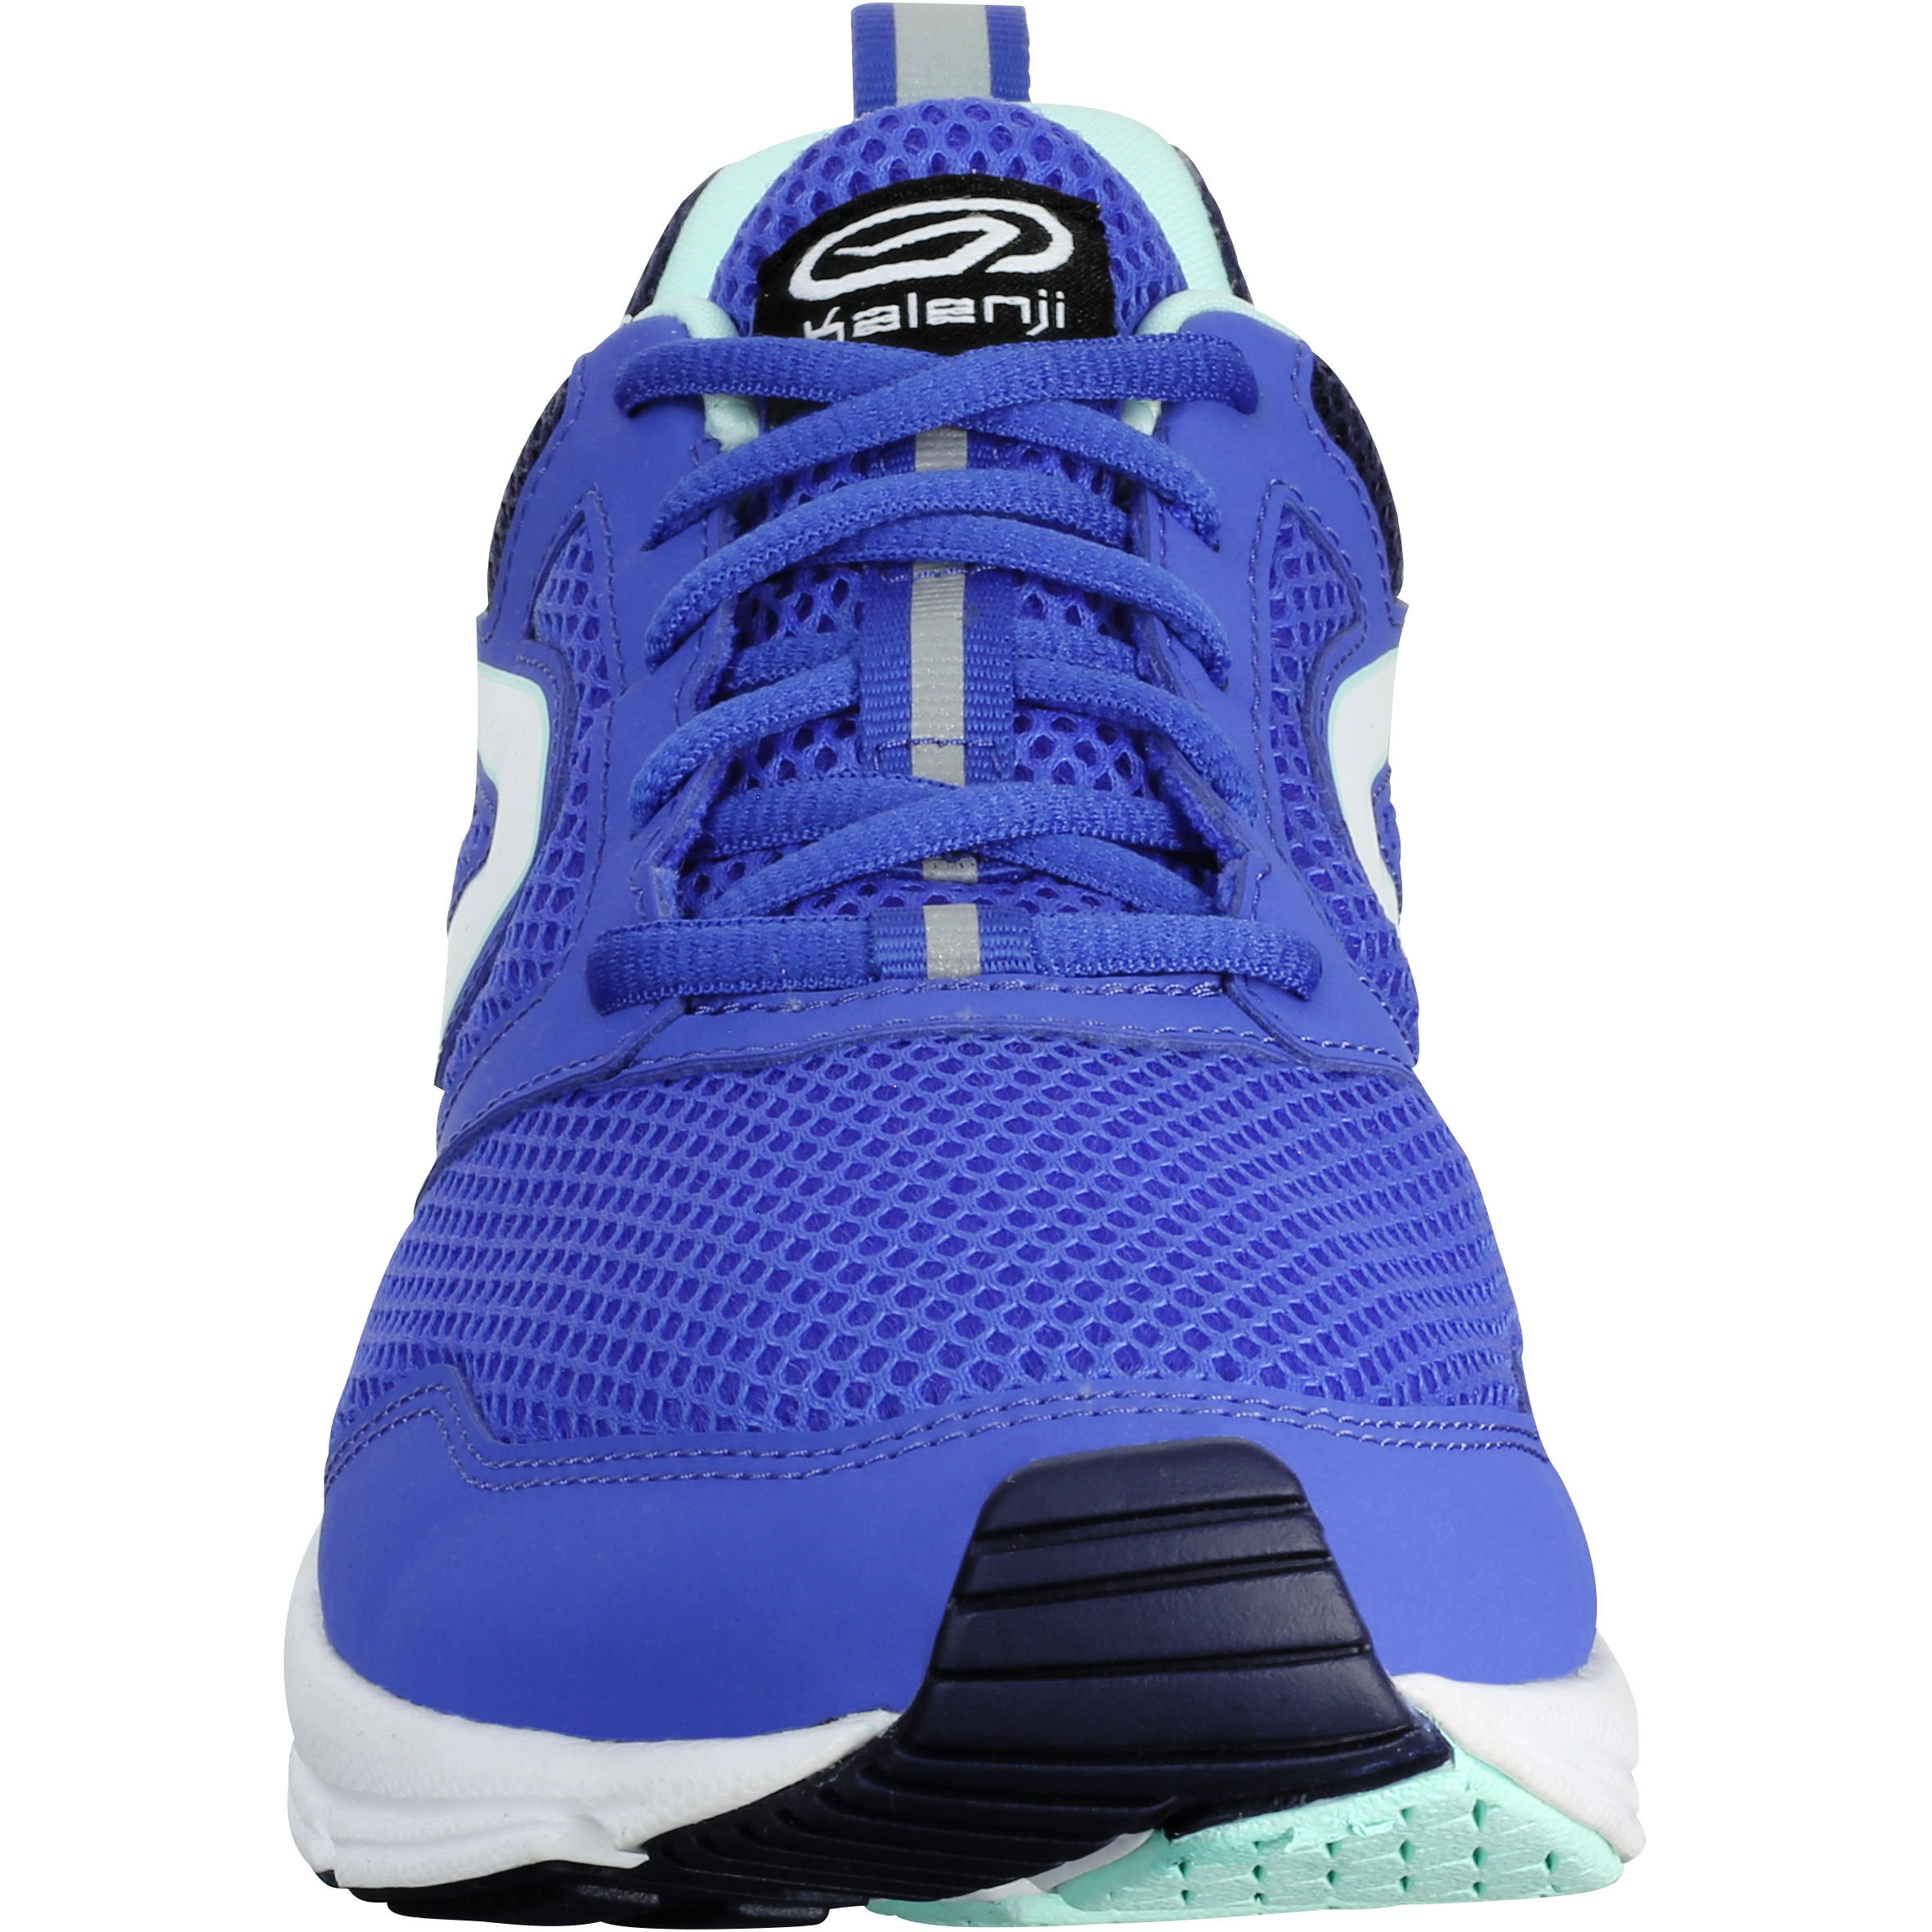 Run Active Women's Running Shoes - Blue 4/6